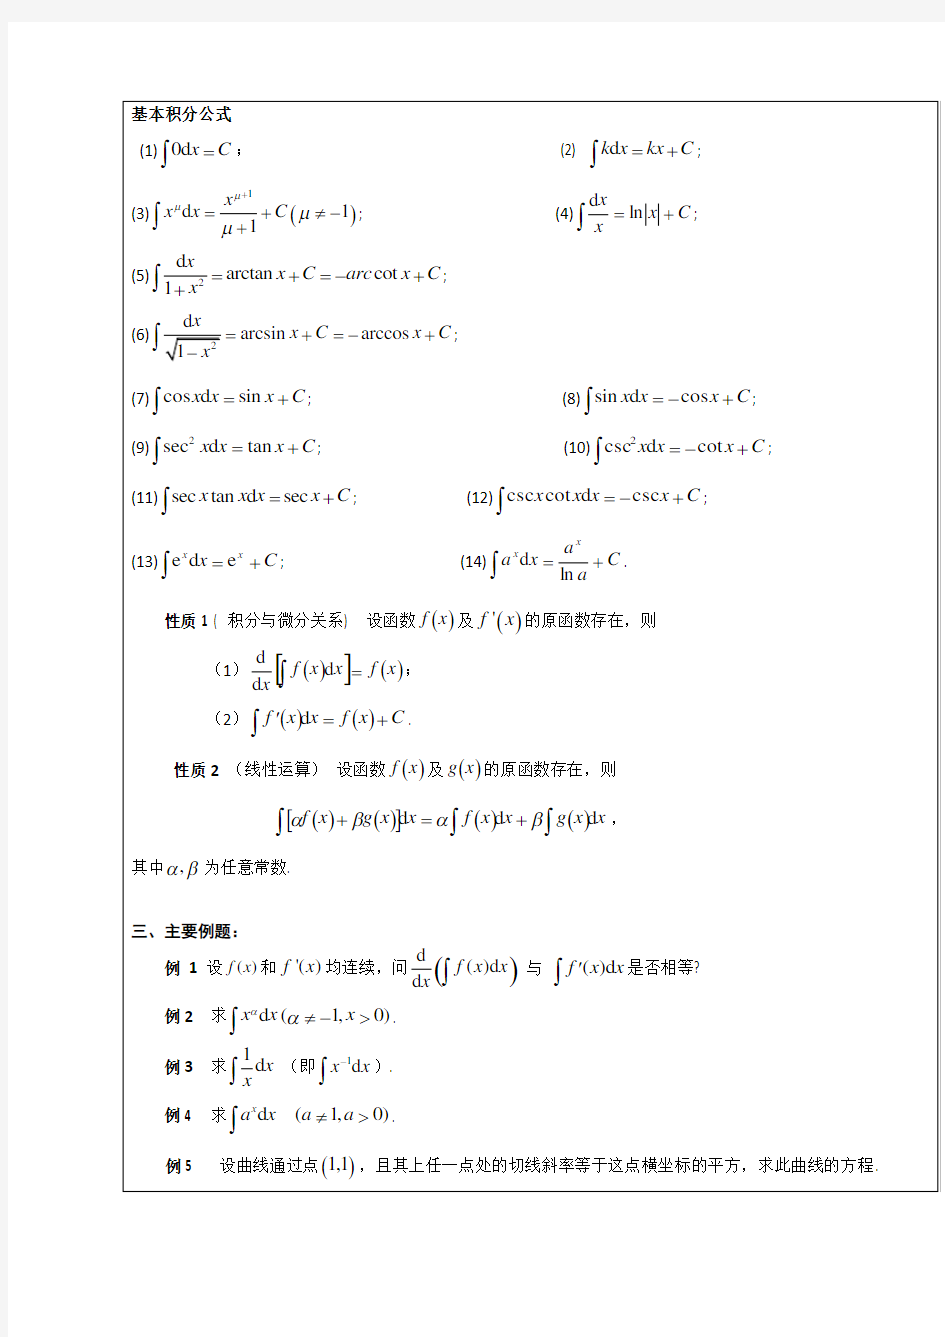 同济大学高等数学教案第三章一元函数积分学及其应用